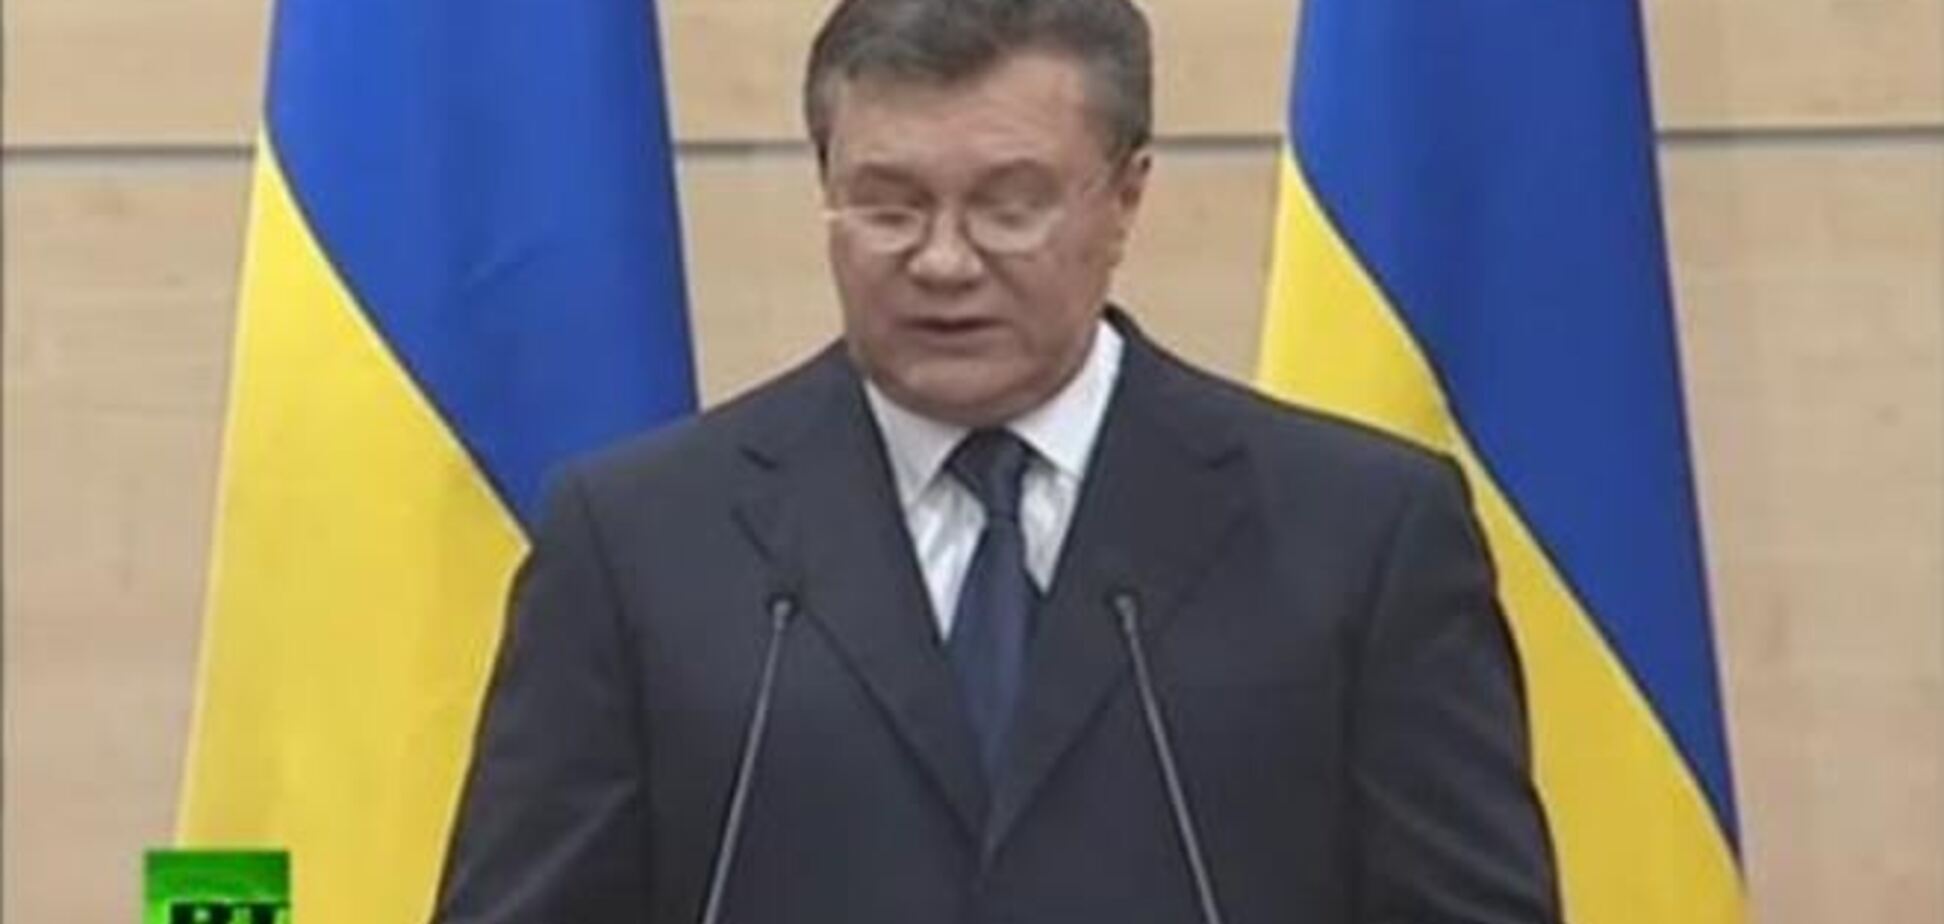 Текст выступления Януковича писали российские специалисты – СМИ